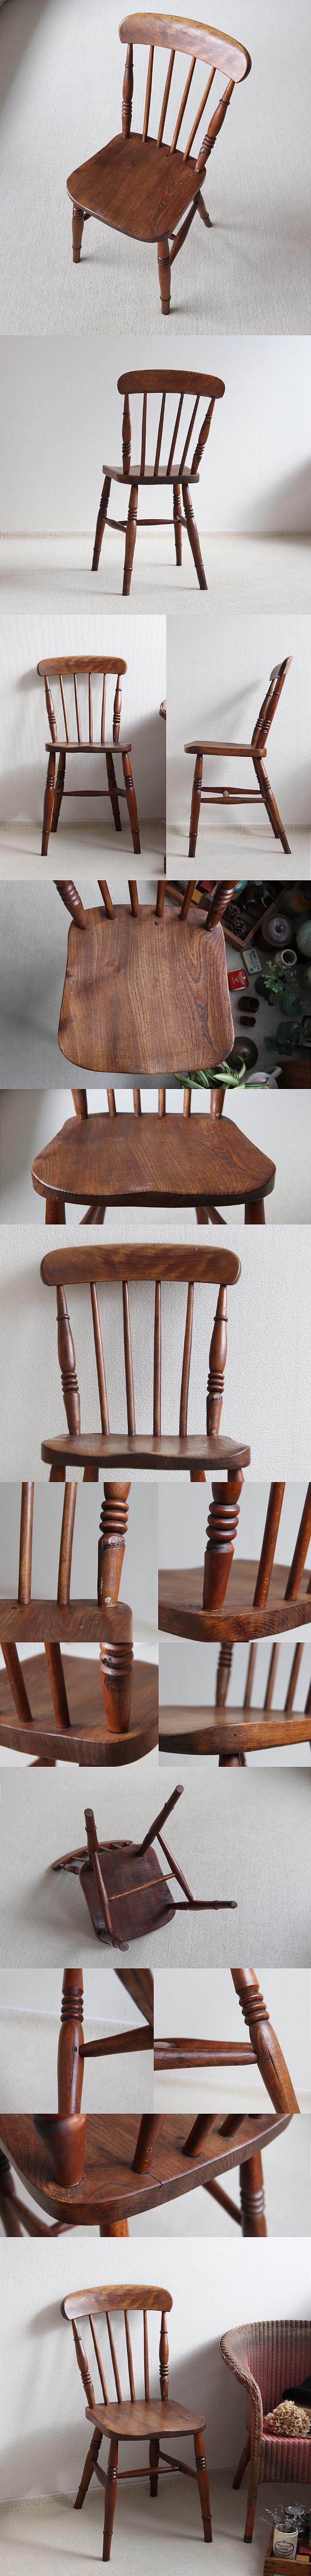 イギリス アンティーク キッチンチェア 木製椅子 カントリー 古木 店舗什器 家具「一枚板座面」T-951